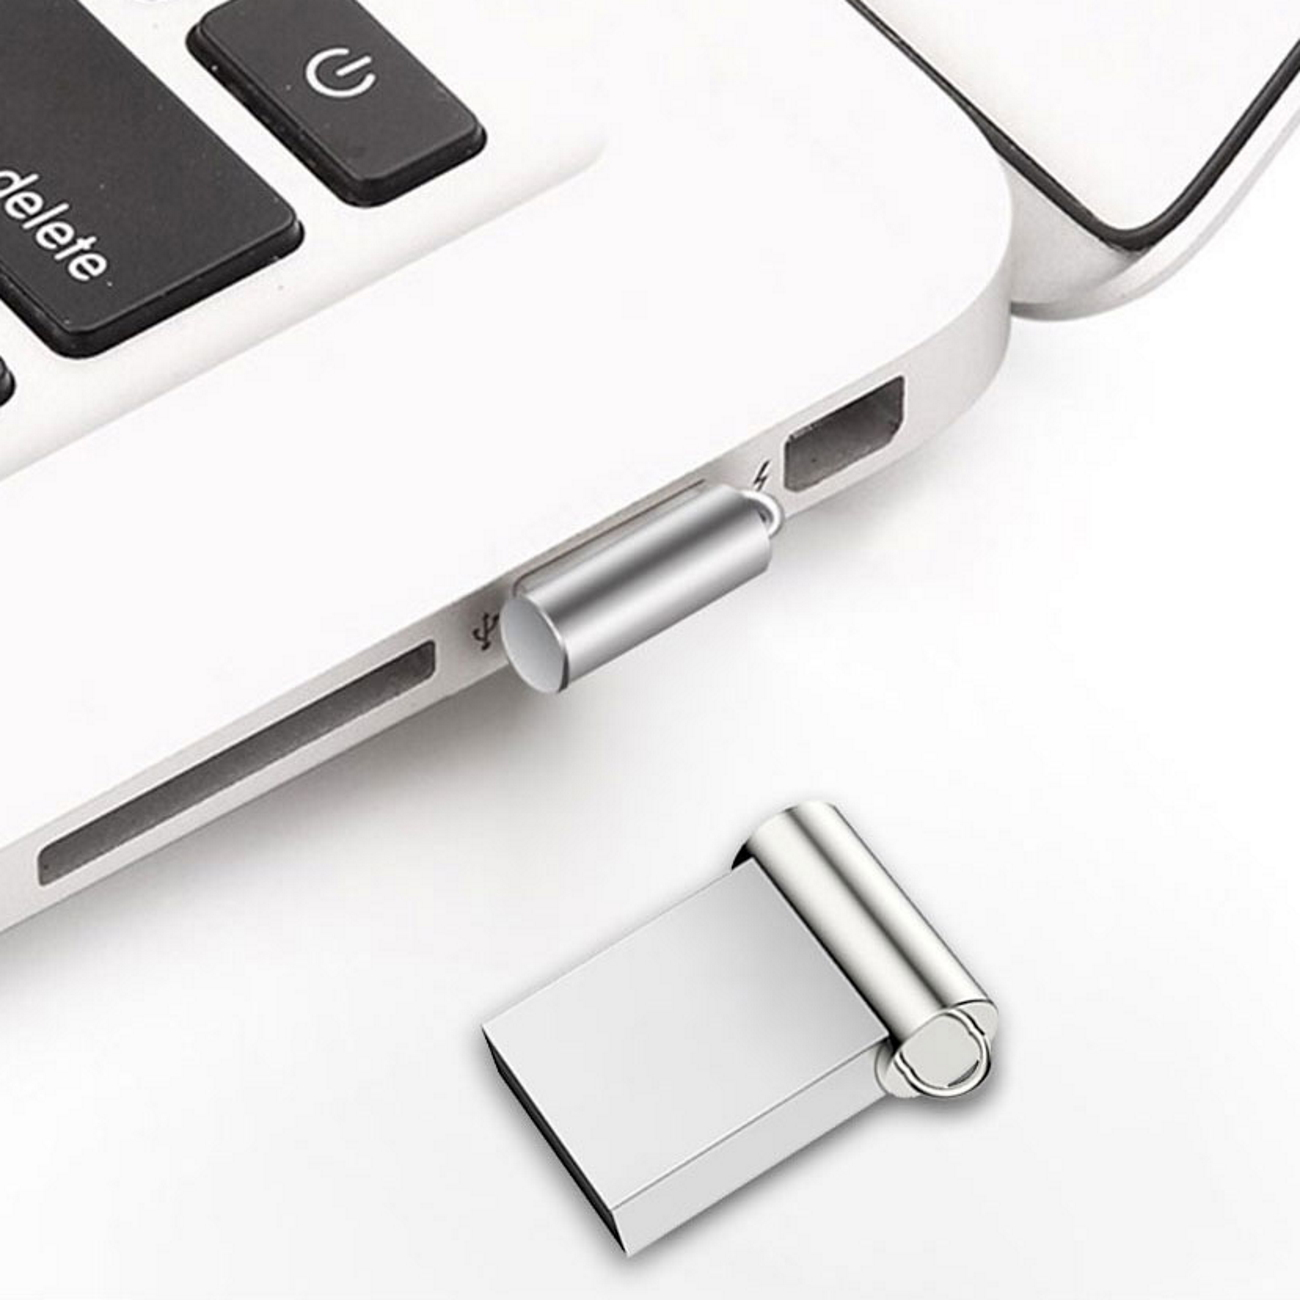 M5 16 ® GB) USB-Stick Mini (Silber, GERMANY USB